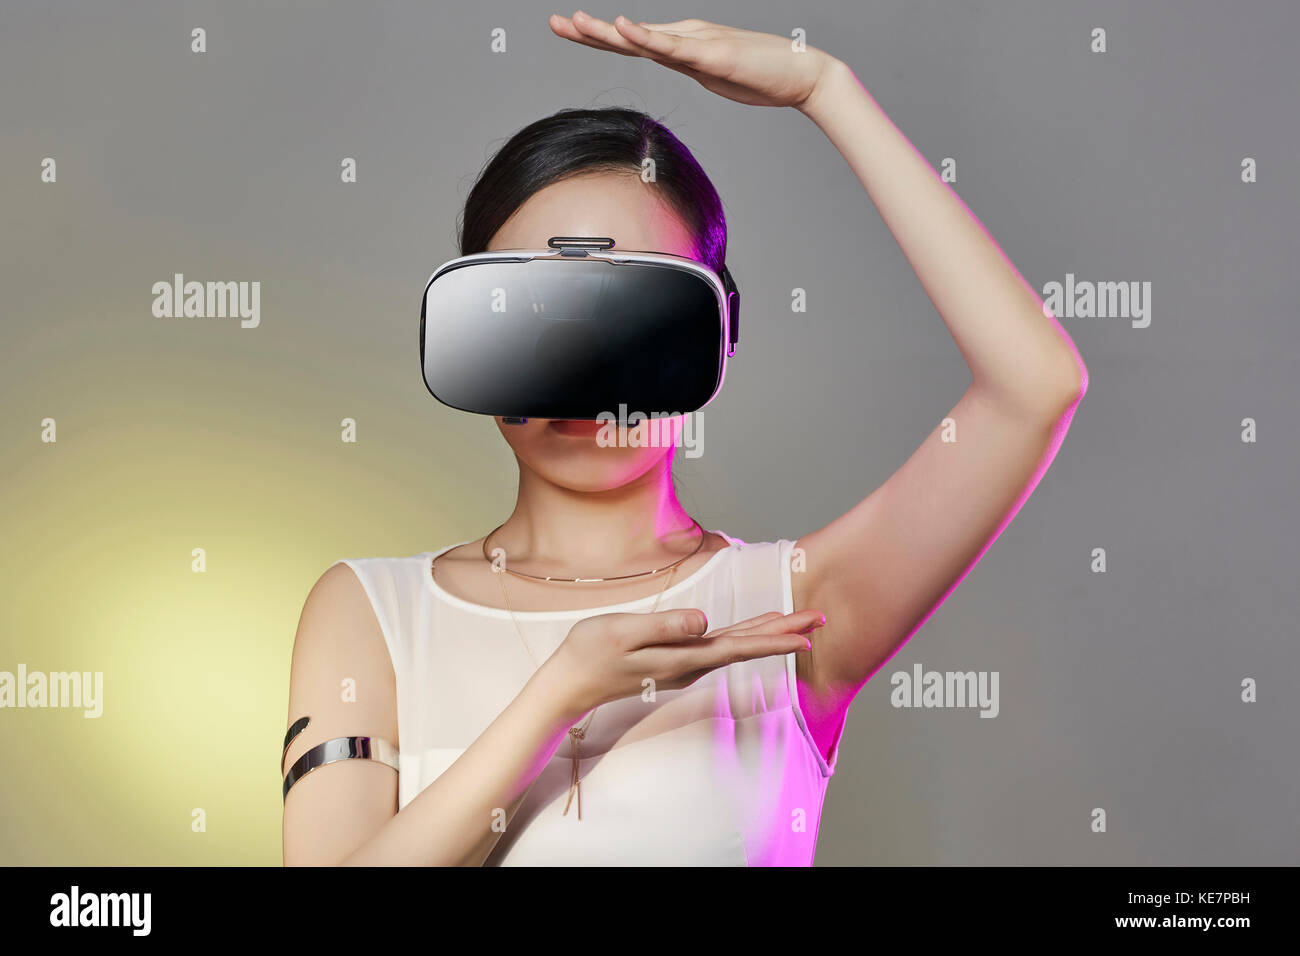 Portrait de jeune femme portant un casque de réalité virtuelle posing Banque D'Images